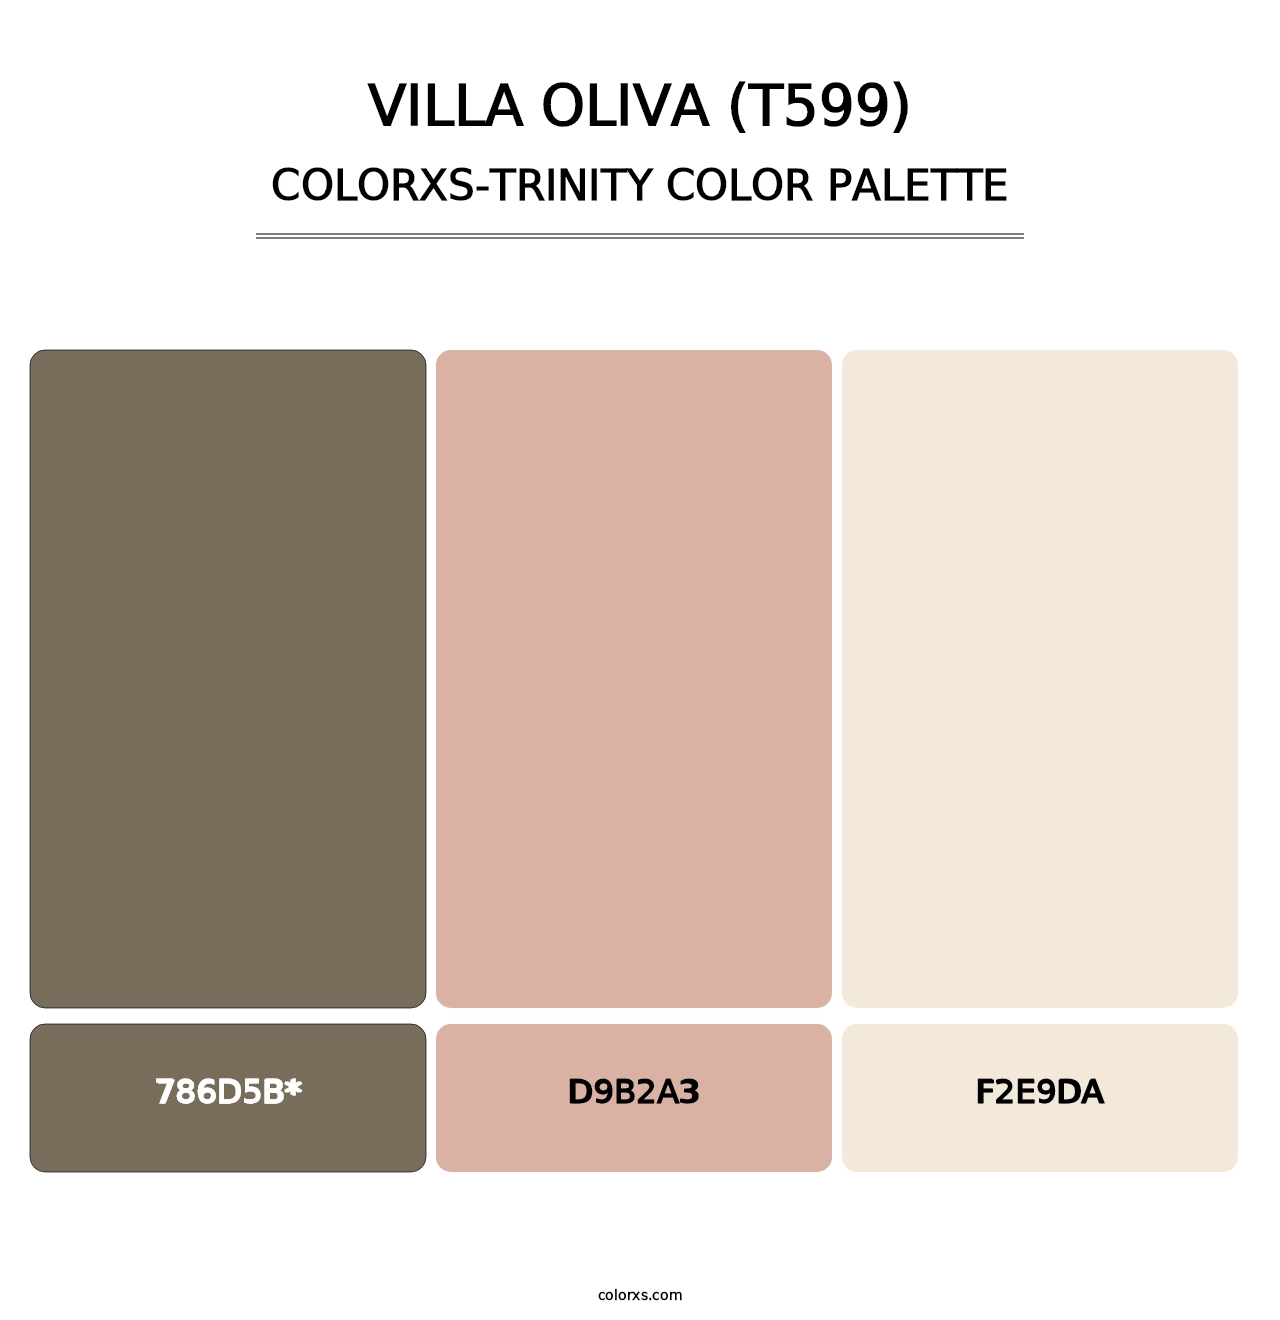 Villa Oliva (T599) - Colorxs Trinity Palette